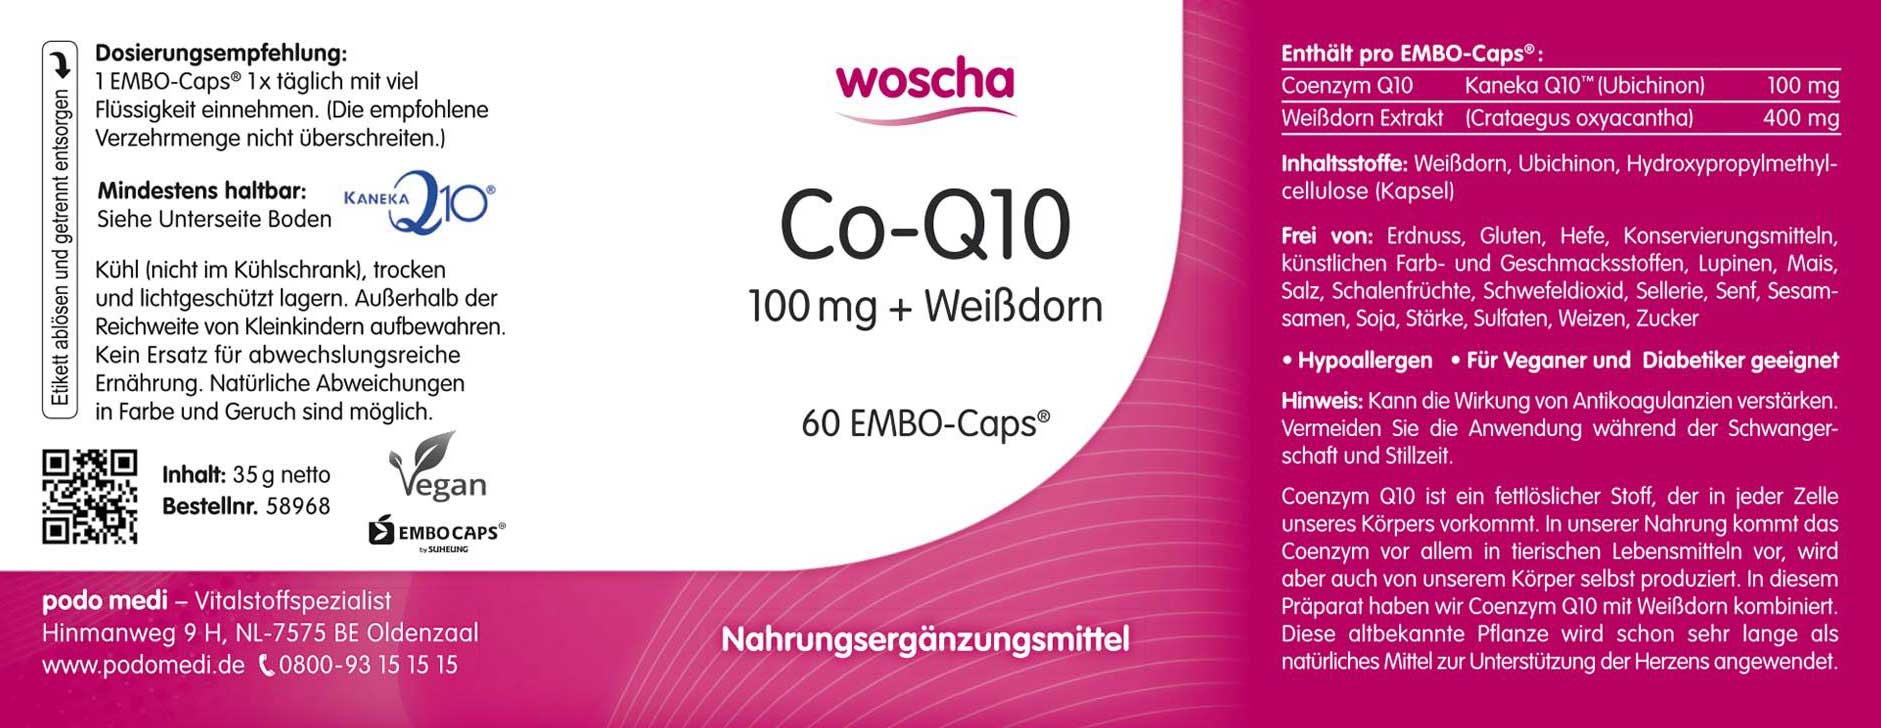 Woscha Co-Q10 mit Weißdorn von podo medi beinhaltet 60 Kapseln Etikett